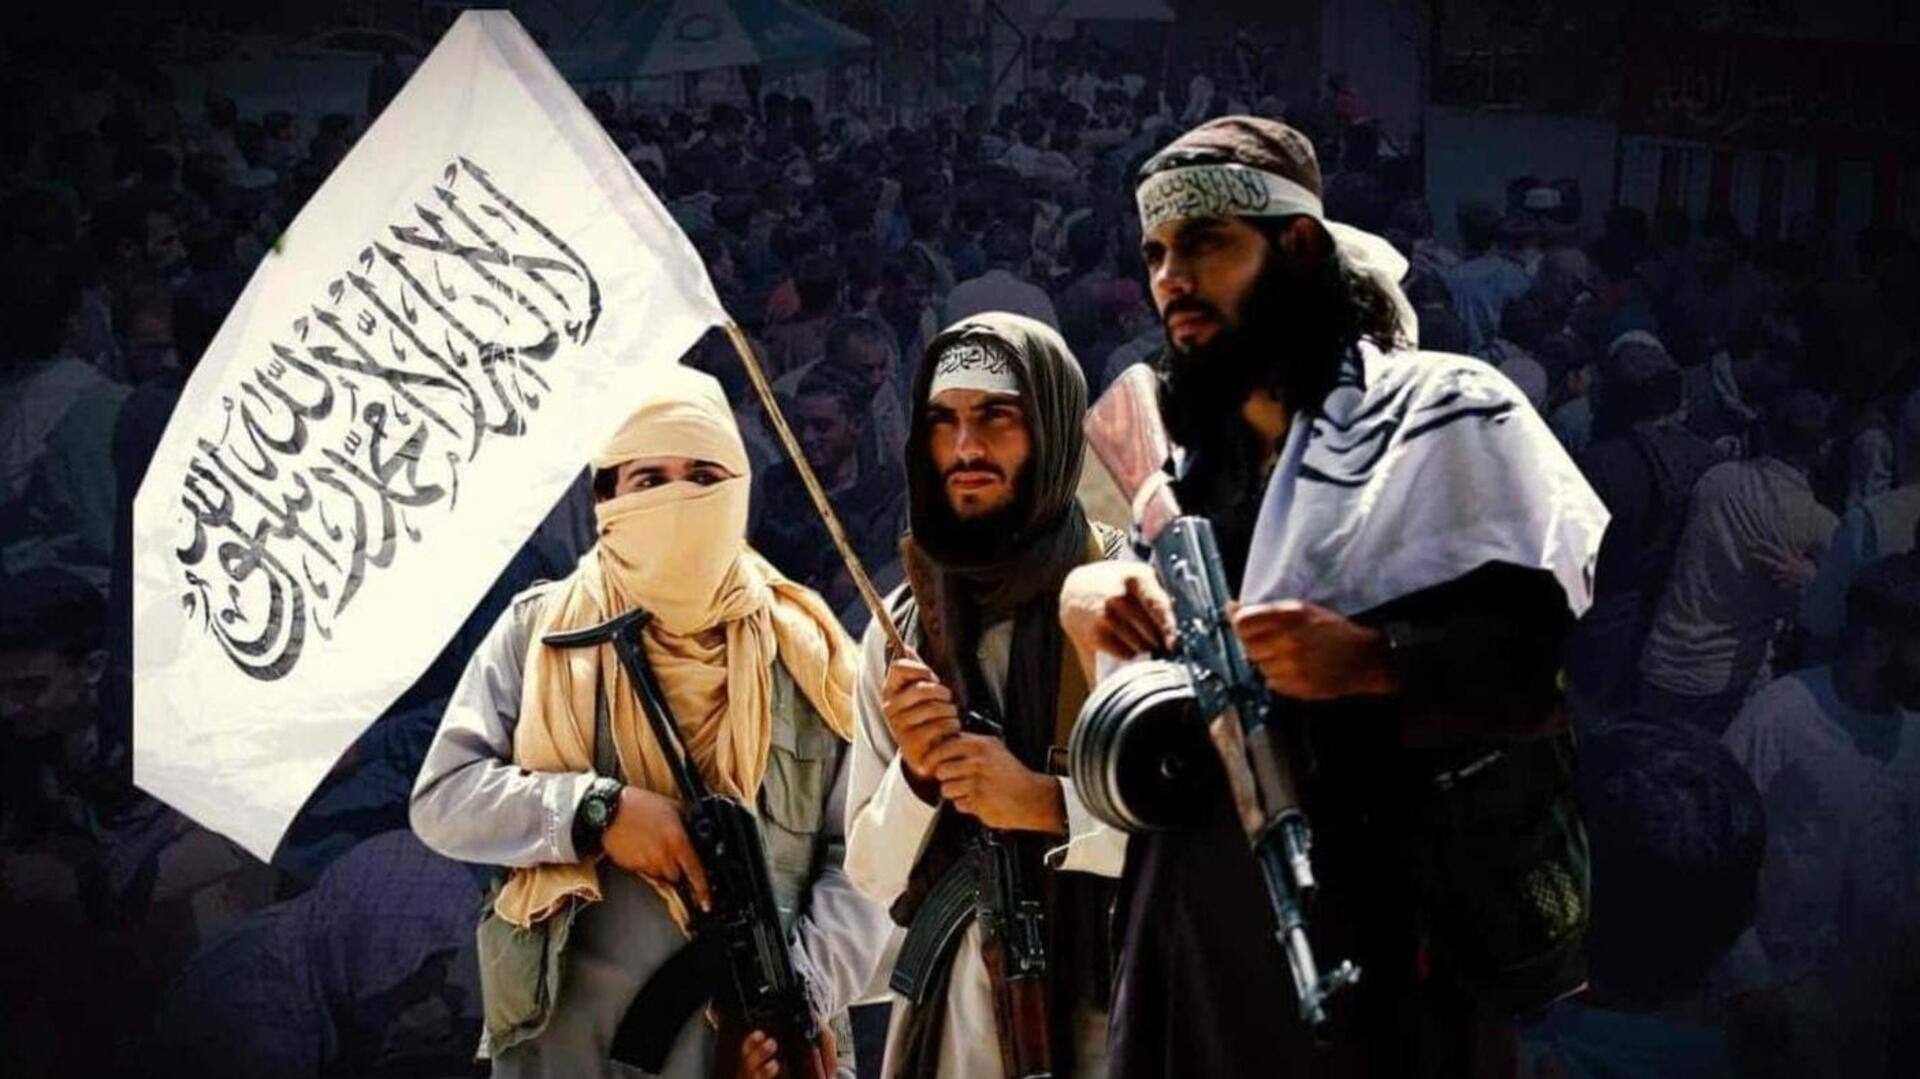 अफगानिस्तान: तालिबान ने काबुल में हिंदू और सिख प्रतिनिधि नियुक्त किए, करेंगे अल्पसंख्यक अधिकारों की वकालत